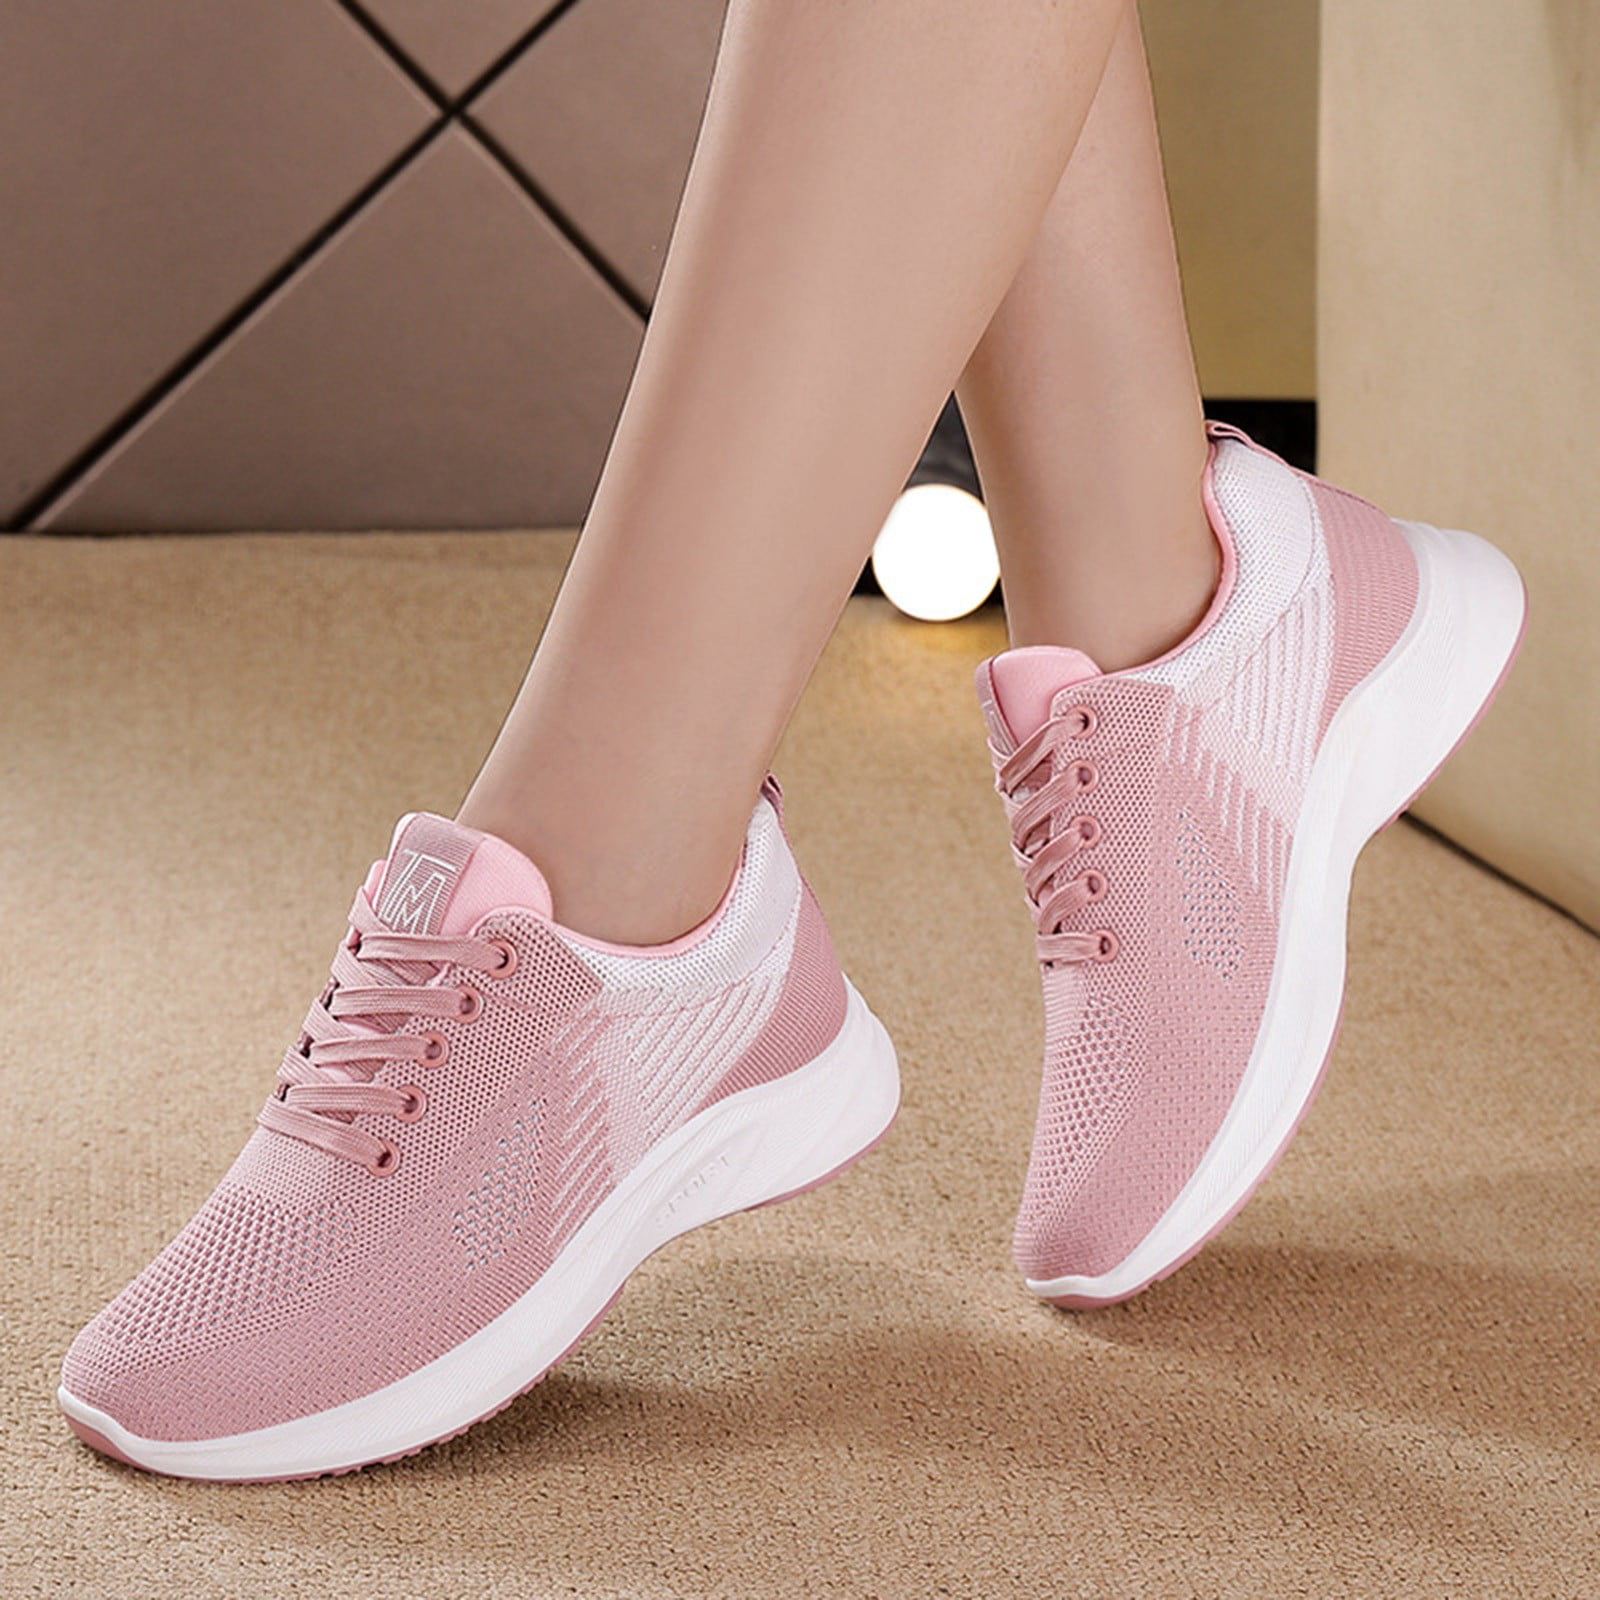 Super high heel 10cm shoes Women's Pumps Wedge Hidden Heels Loafers Sneakers  | eBay